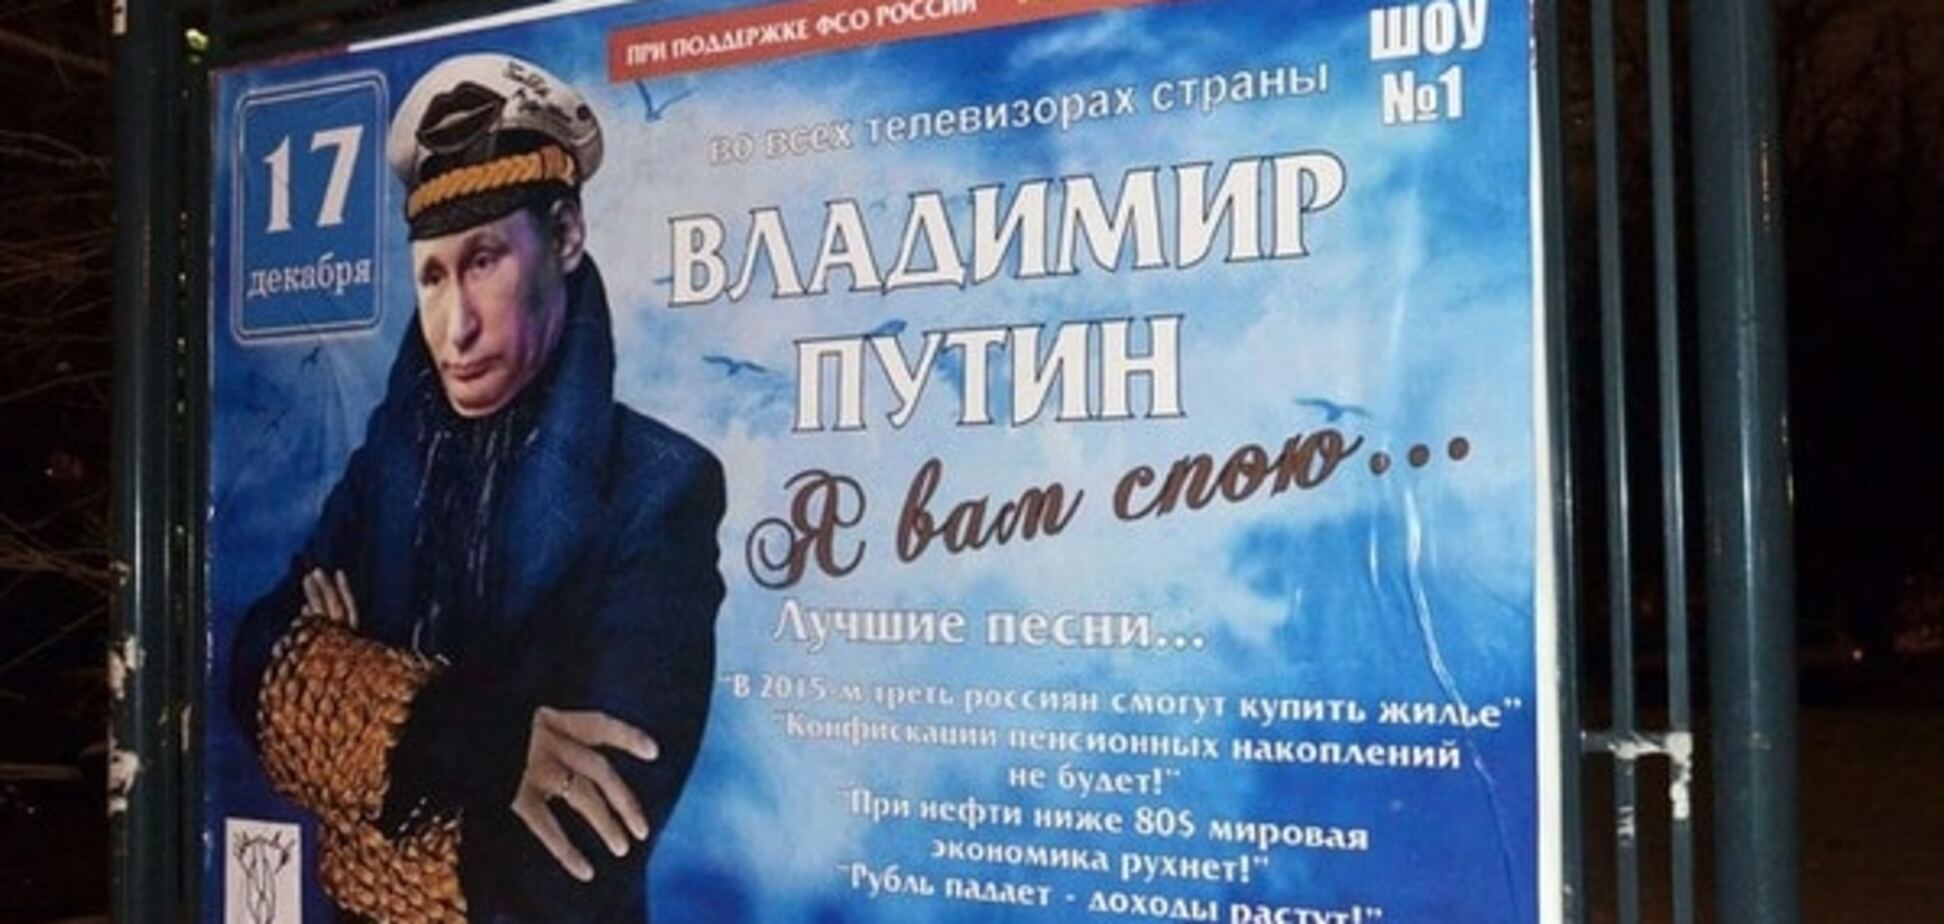 Весь мир - театр, а Путин в нем - клоун: по Москве расклеили антипутинские афиши